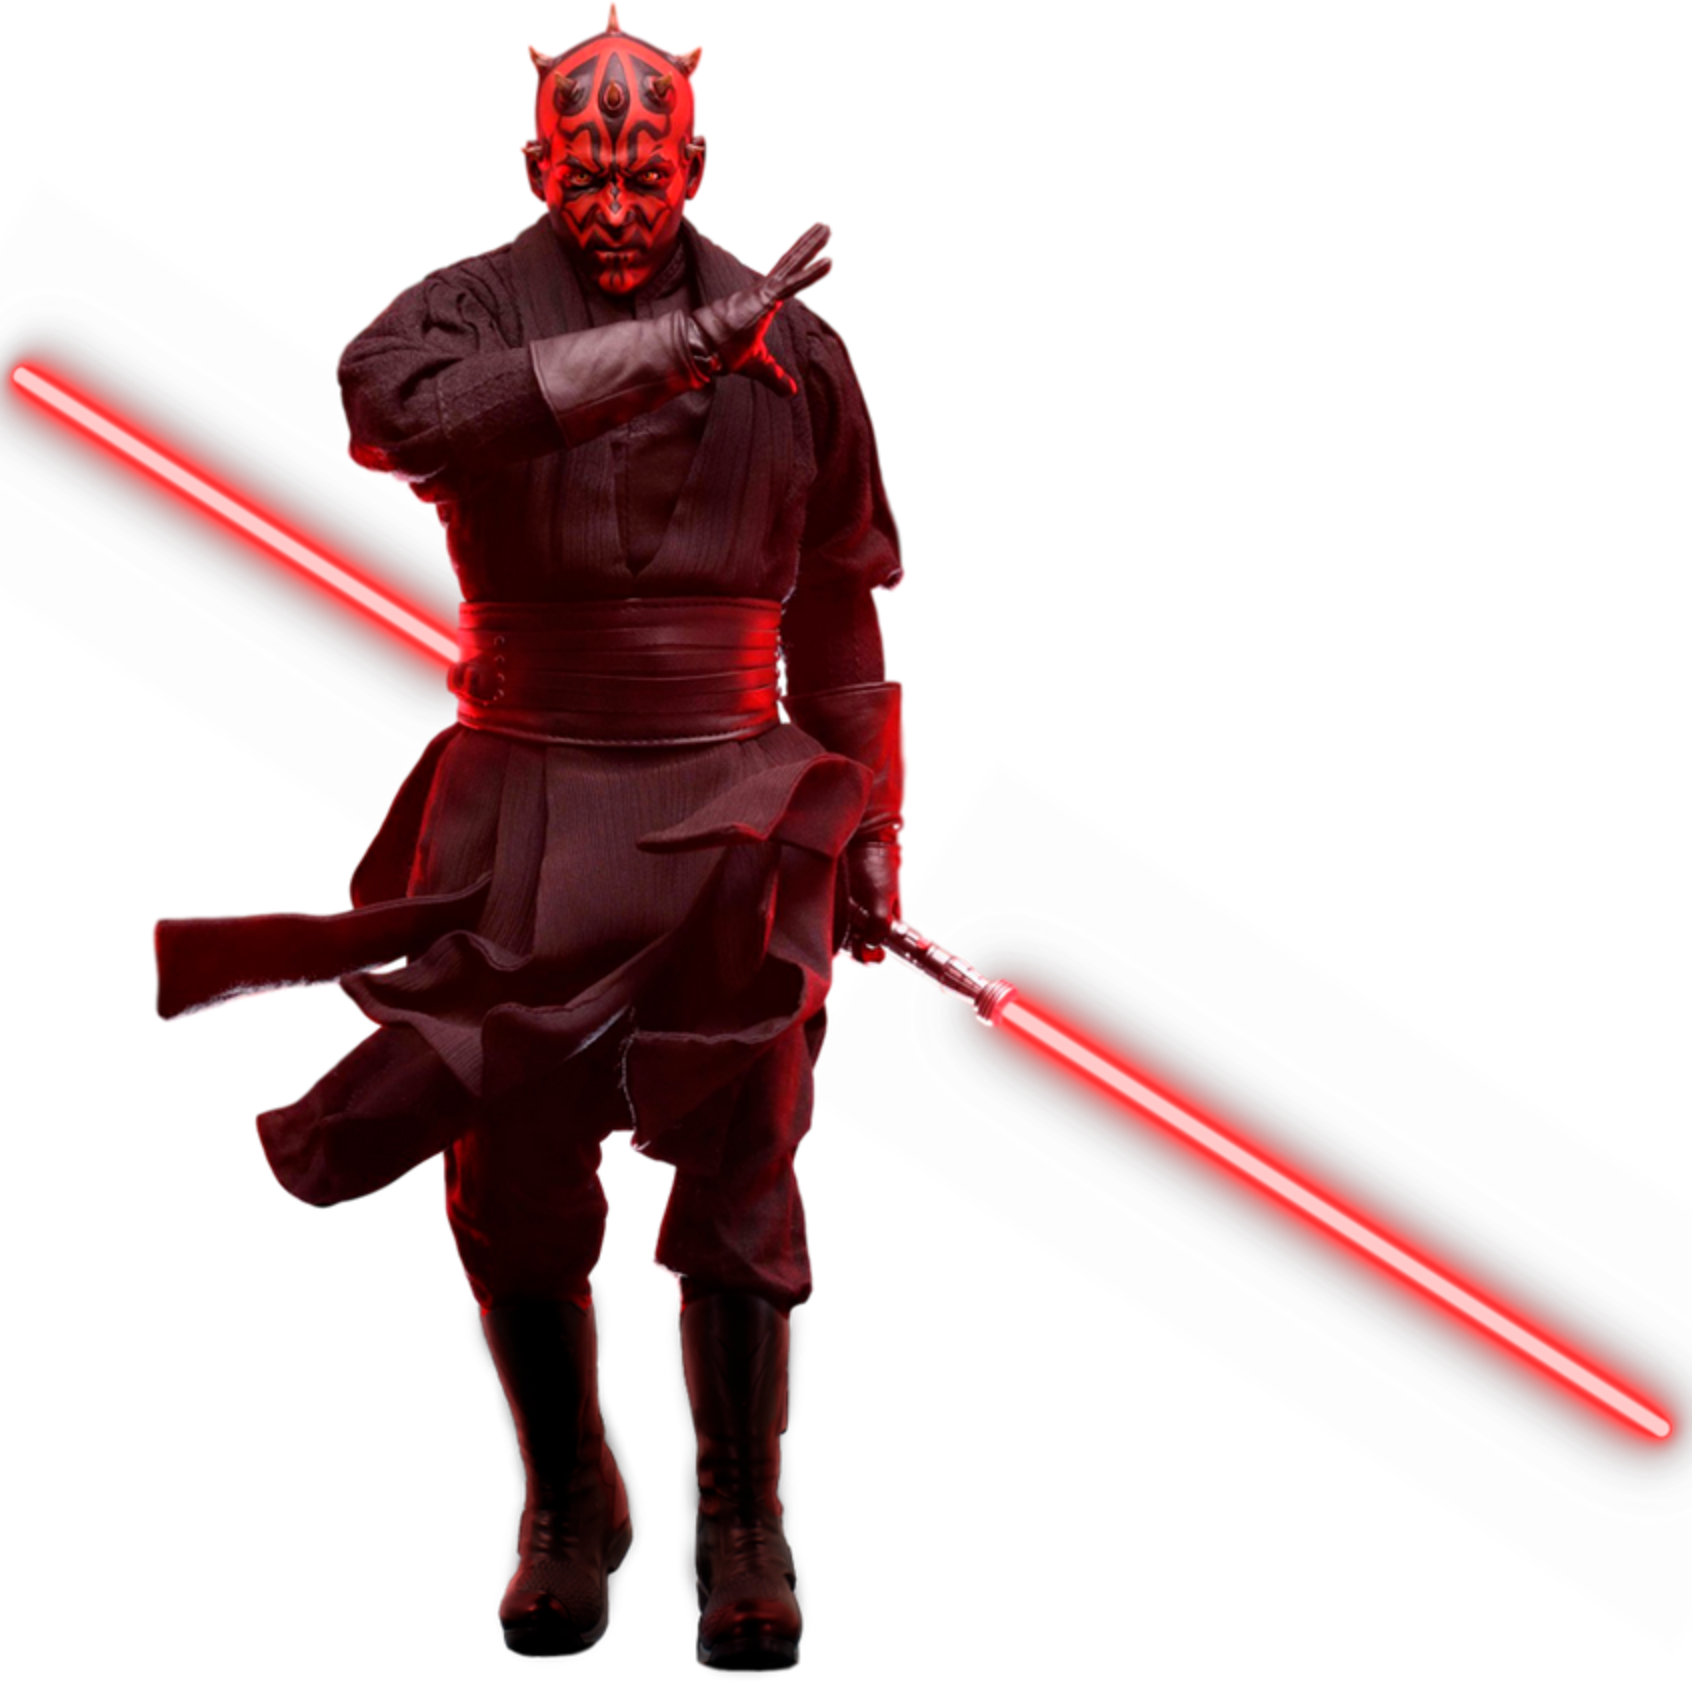 Personagem Darth Maul vestindo roupa escura avermelhada e segurando um sabre de luz vermelho